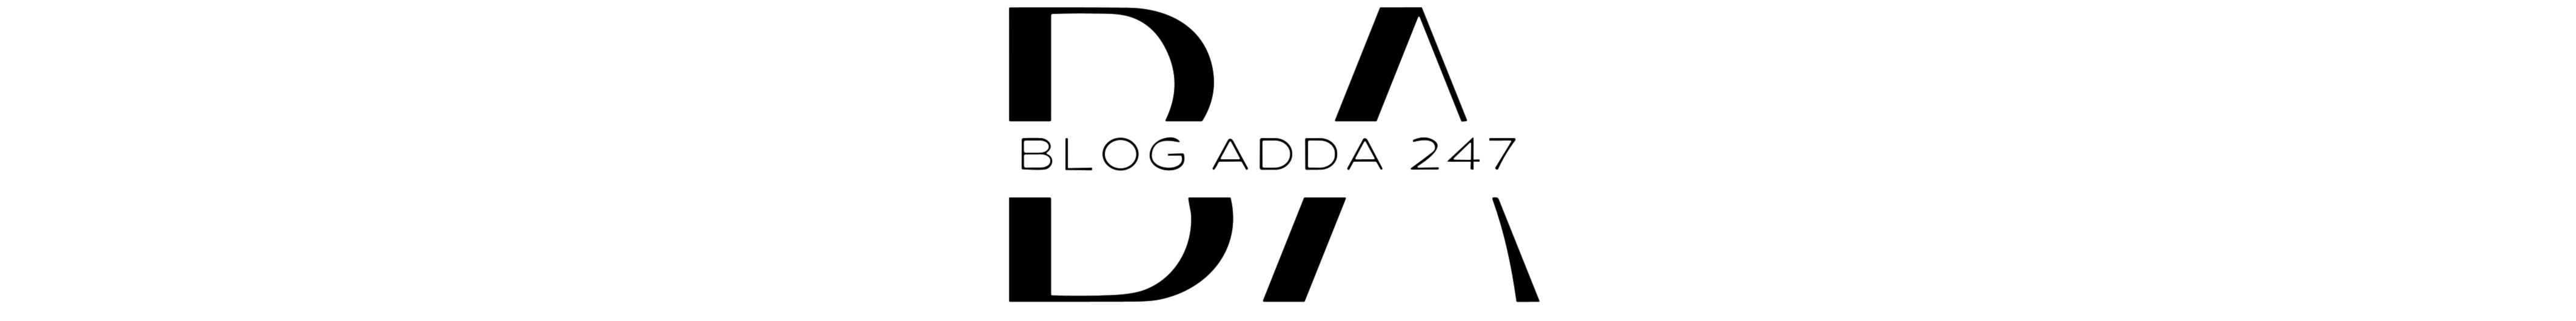 BlogAdda247